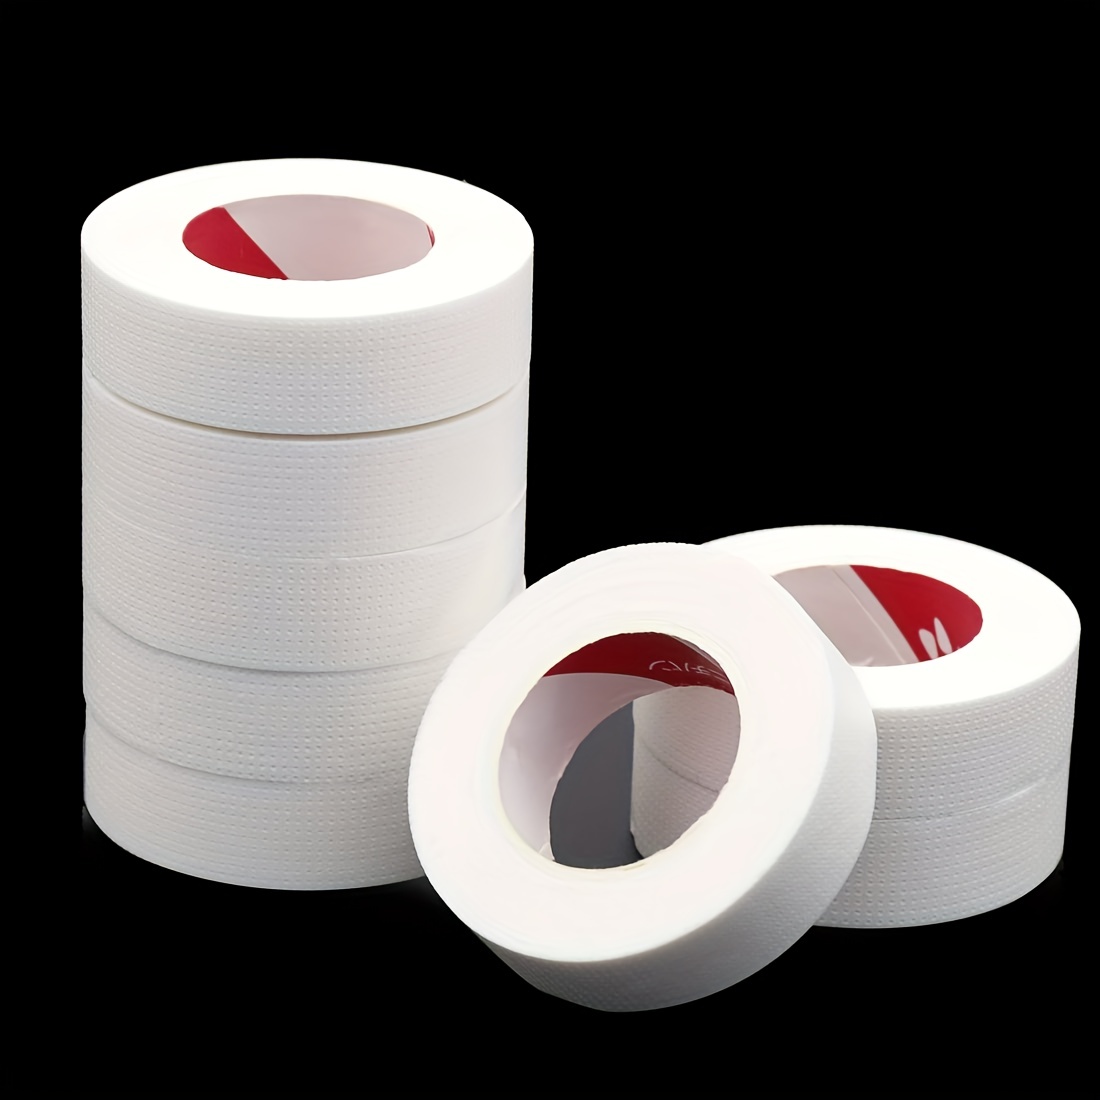 3M Micropore Lash Tape | Wholesale Eyelash Extension Supplies 2pcs